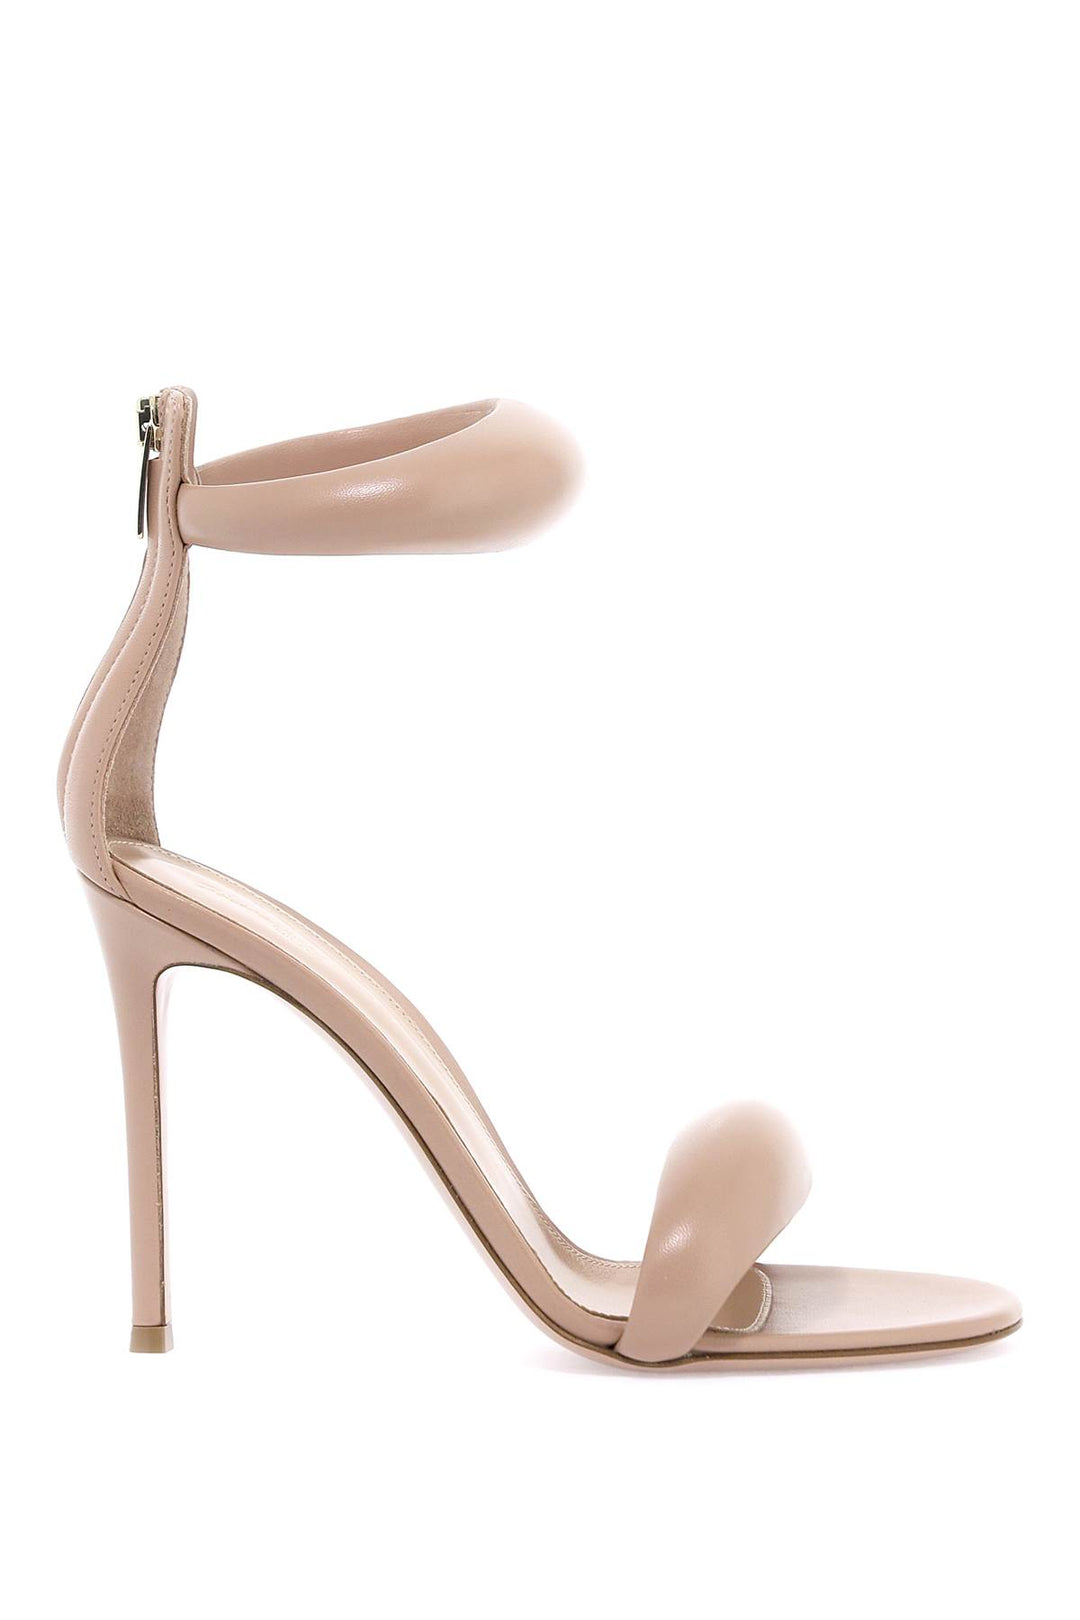 Gianvito Rossi Bijoux Sandals   Pink